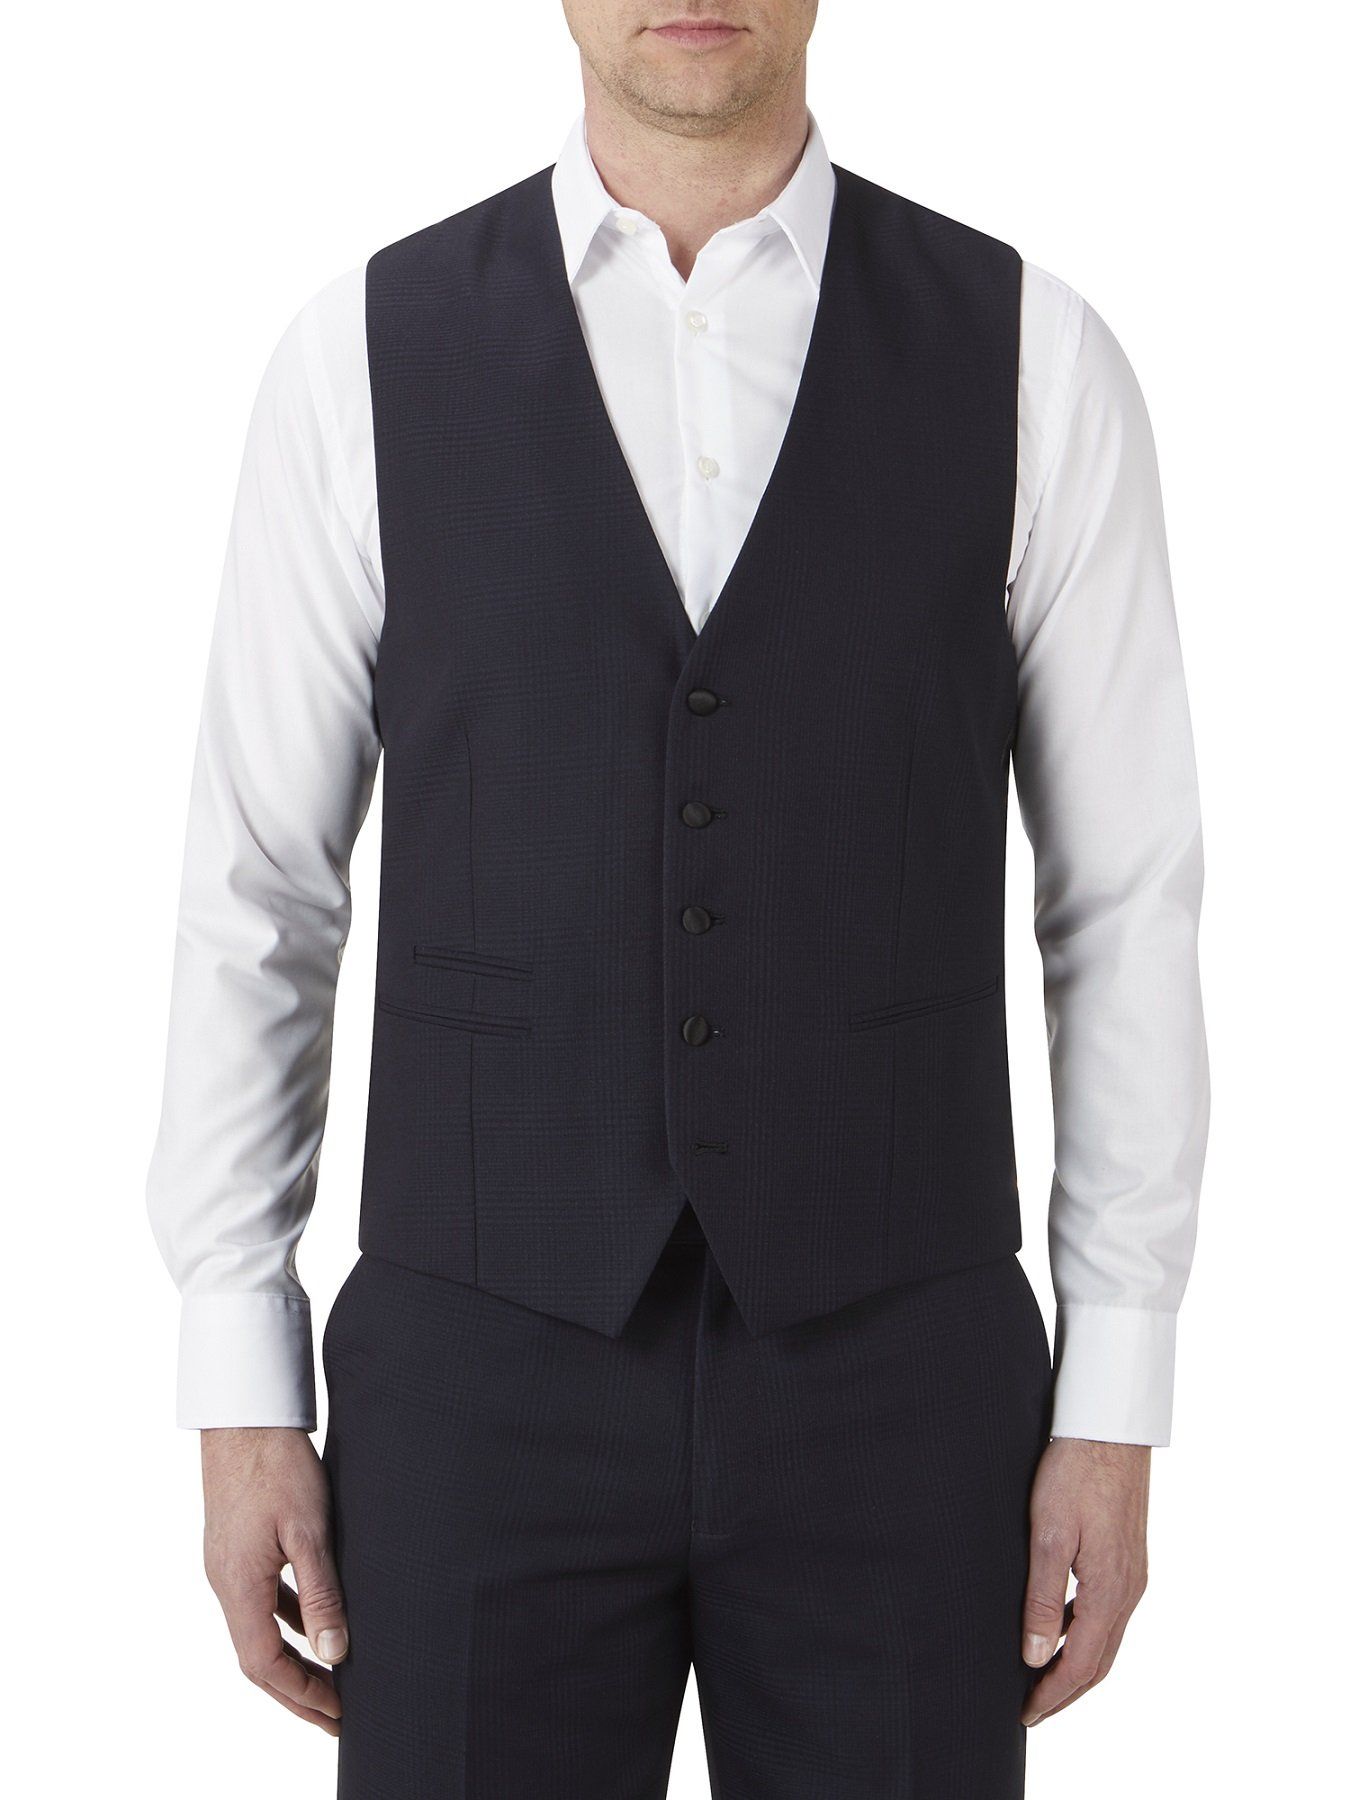 Newman Suit Waistcoat - Larry Adams Meanswear